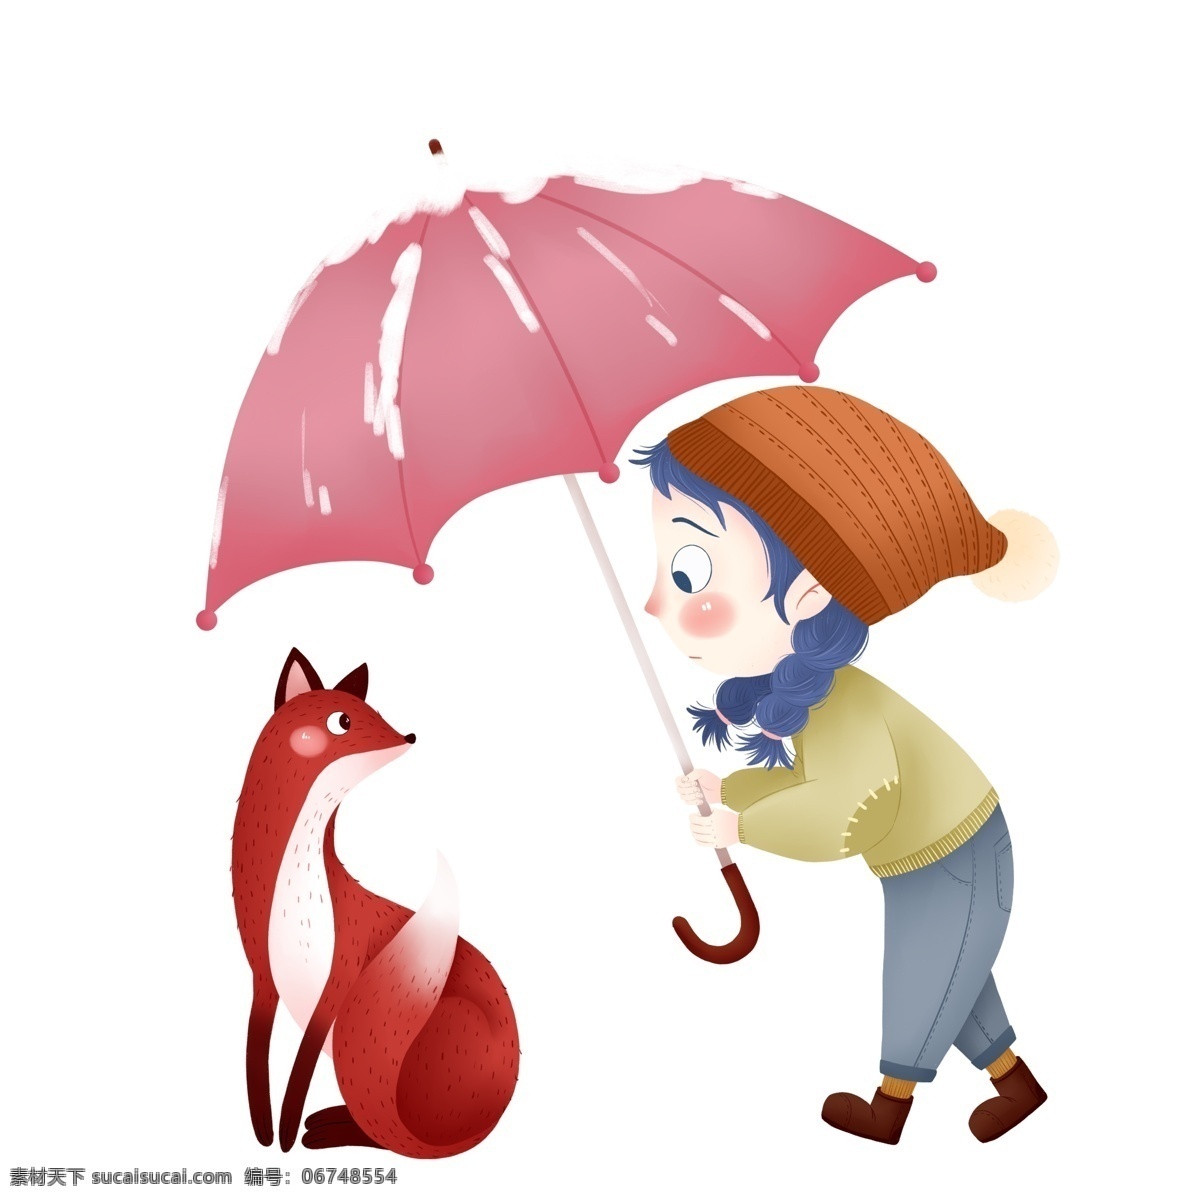 手绘 卡通 狐狸 女孩 元素 红雨伞 可爱元素 人物元素 精致人物 手绘元素 装饰图案 设计元素 卡通元素